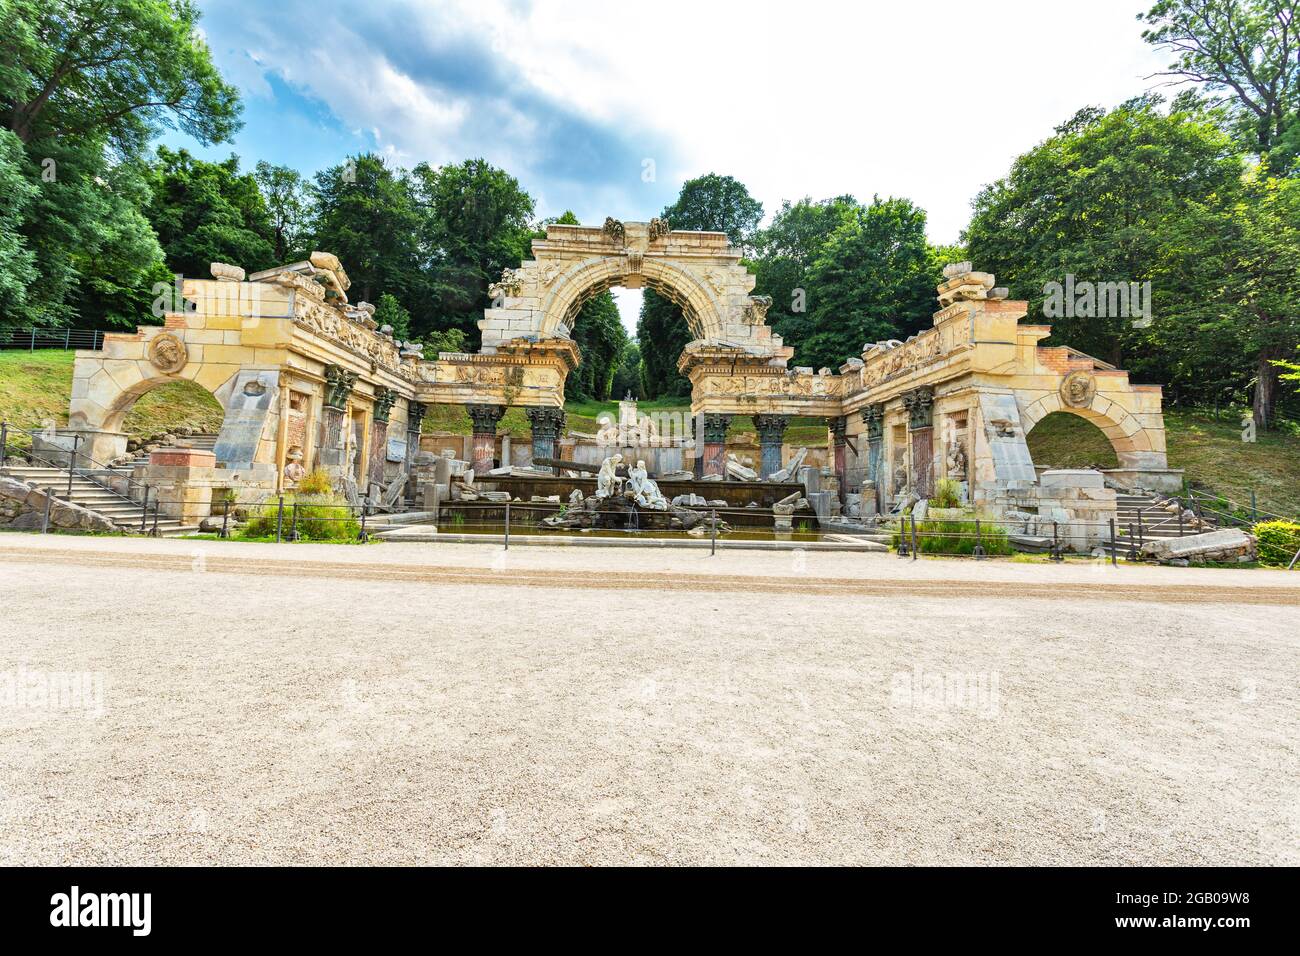 Roman ruin, Schoenbrunn Palace in Vienna, Austria Stock Photo